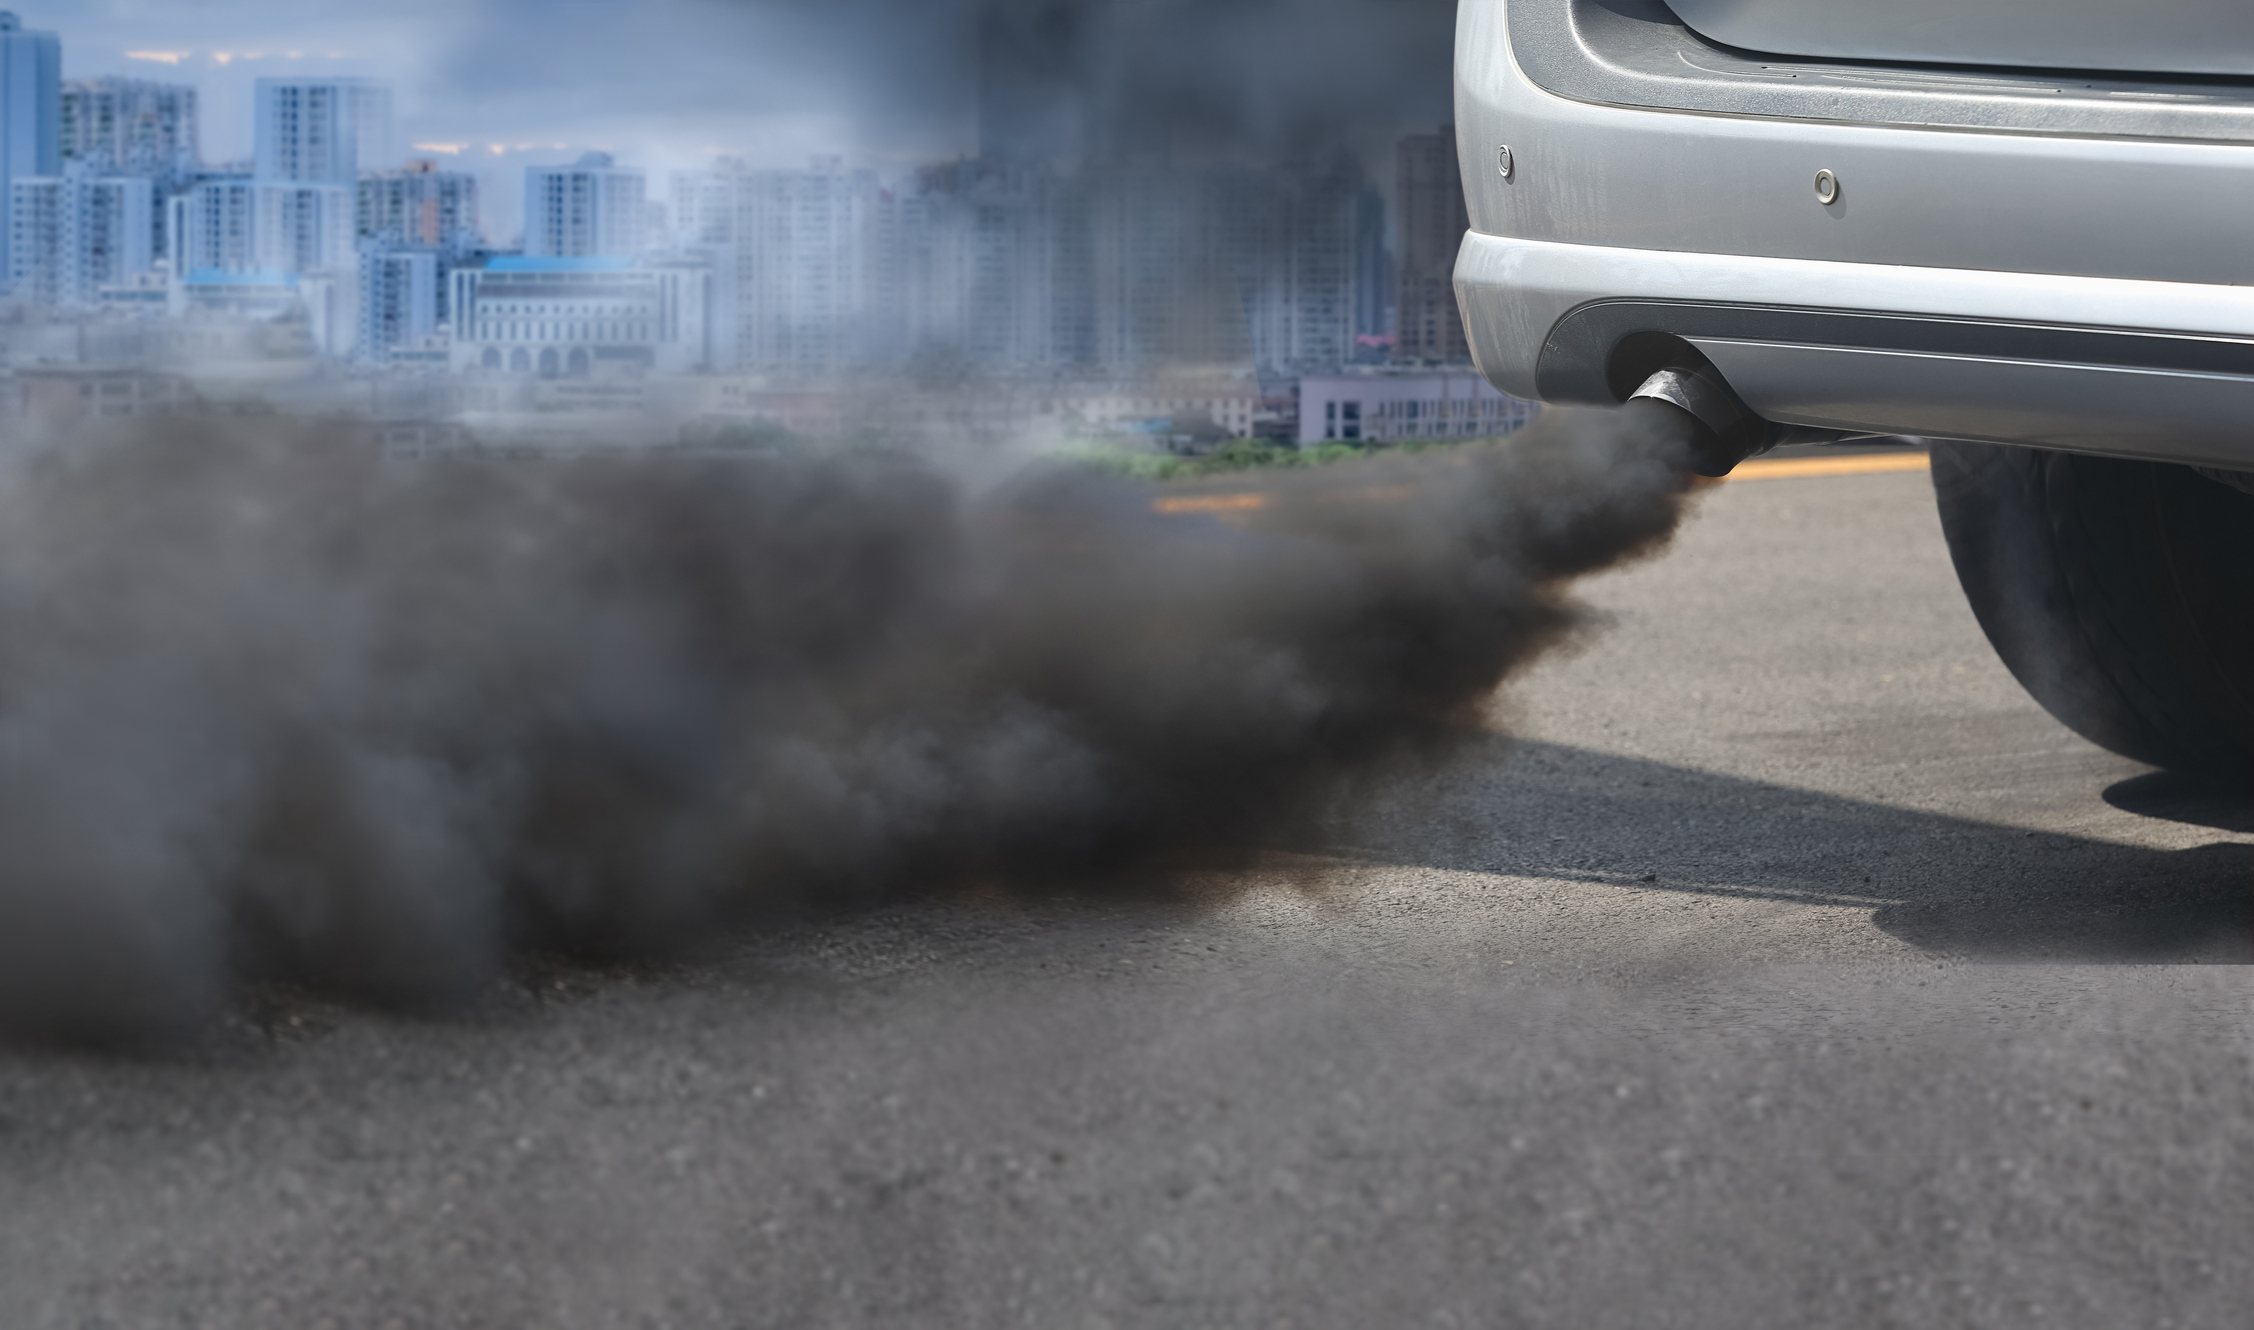 Comment faire pour réduire la pollution d'une voiture diesel